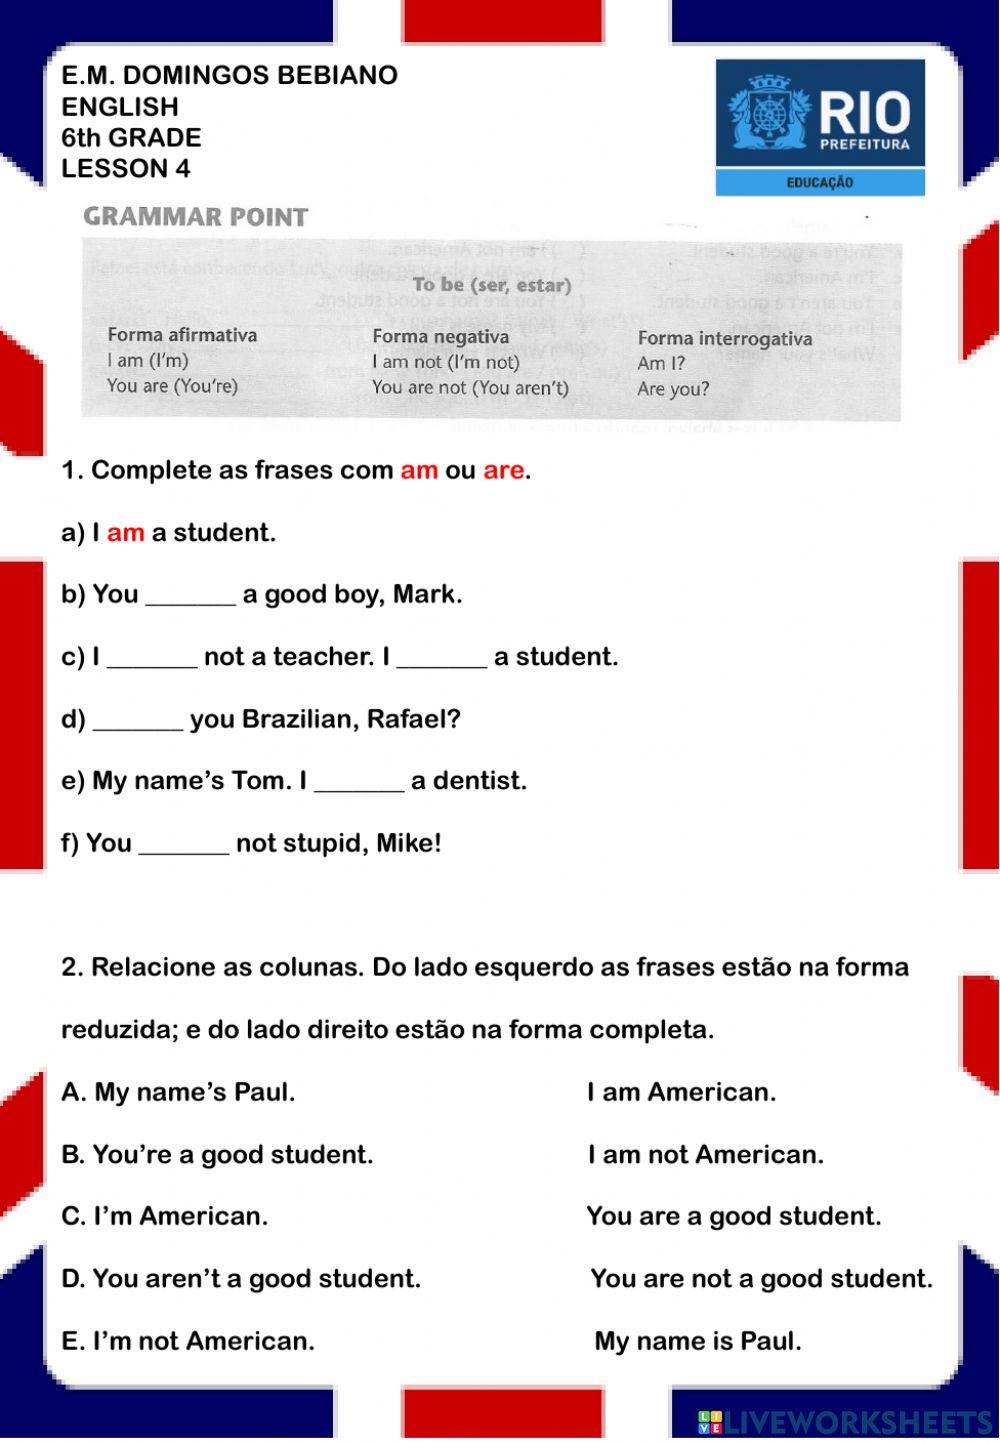 6th grade - E. M. Domingos Bebiano - Lesson 4